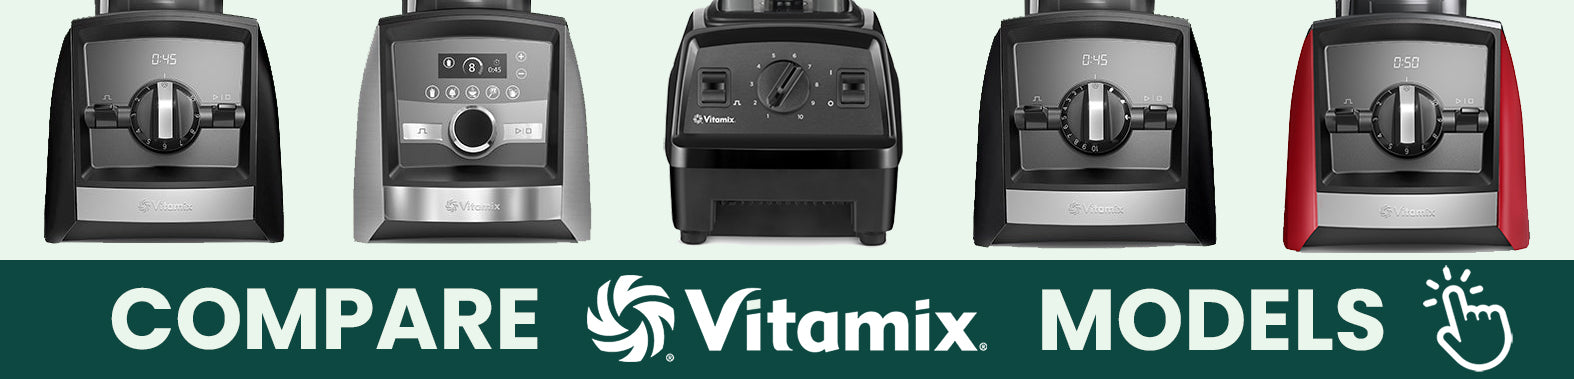 Compare Vitamix Models